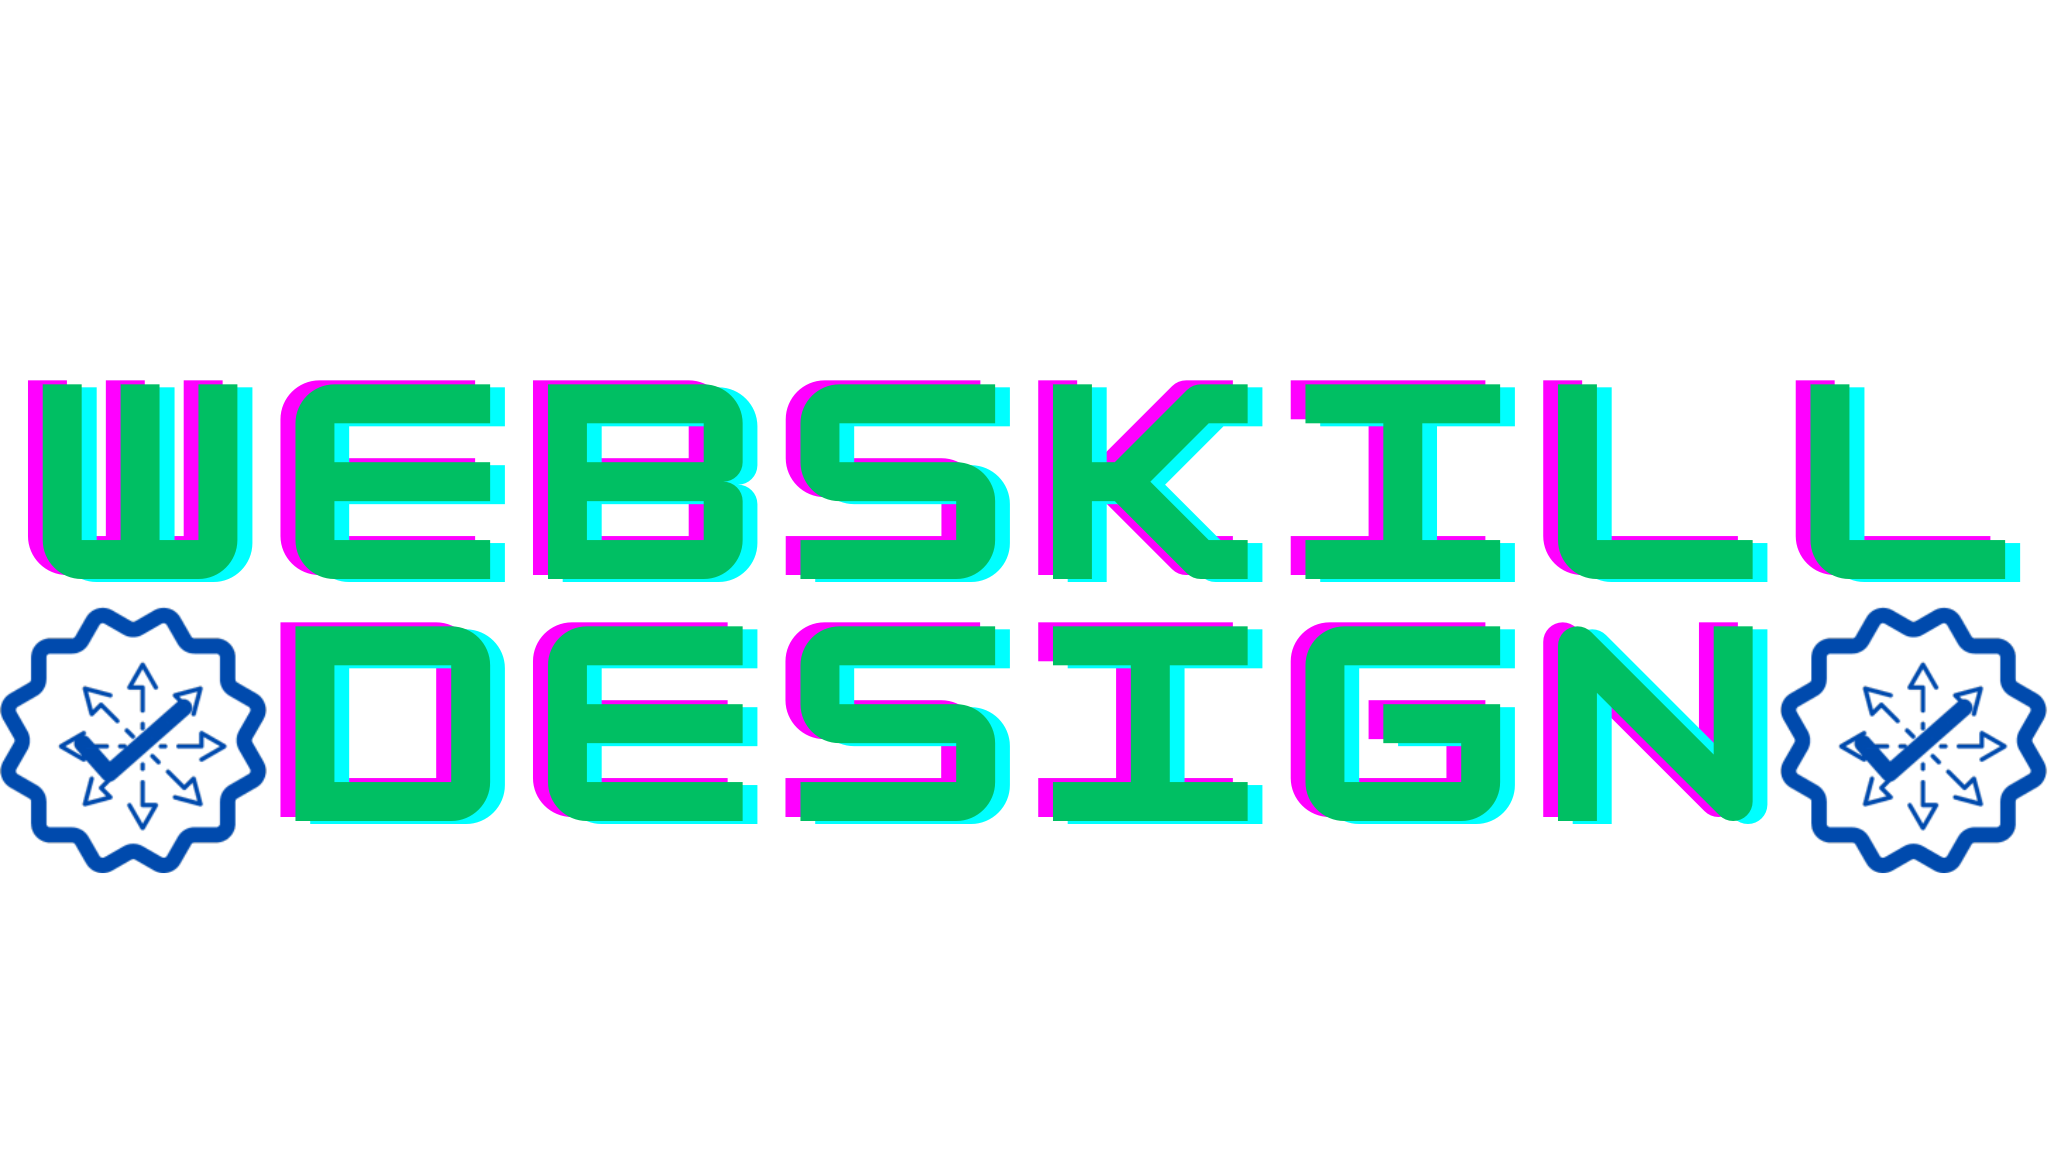 Webskill Design